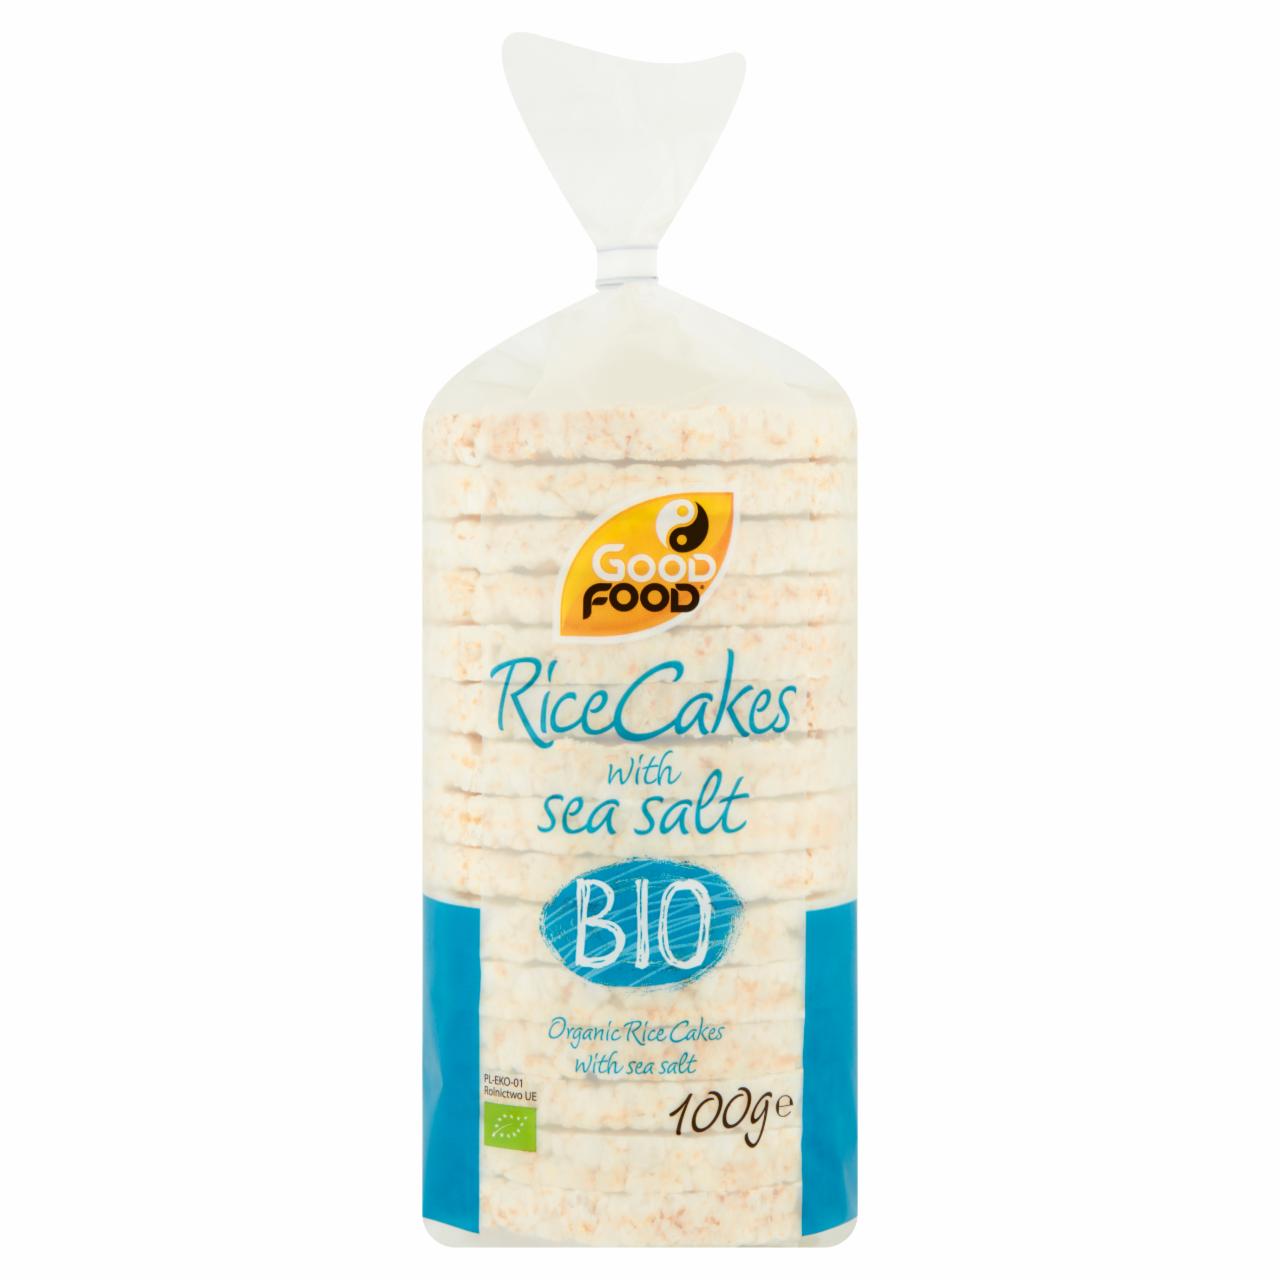 Zdjęcia - Good Food BIO Wafle ryżowe z solą morską 100 g (15 sztuk)